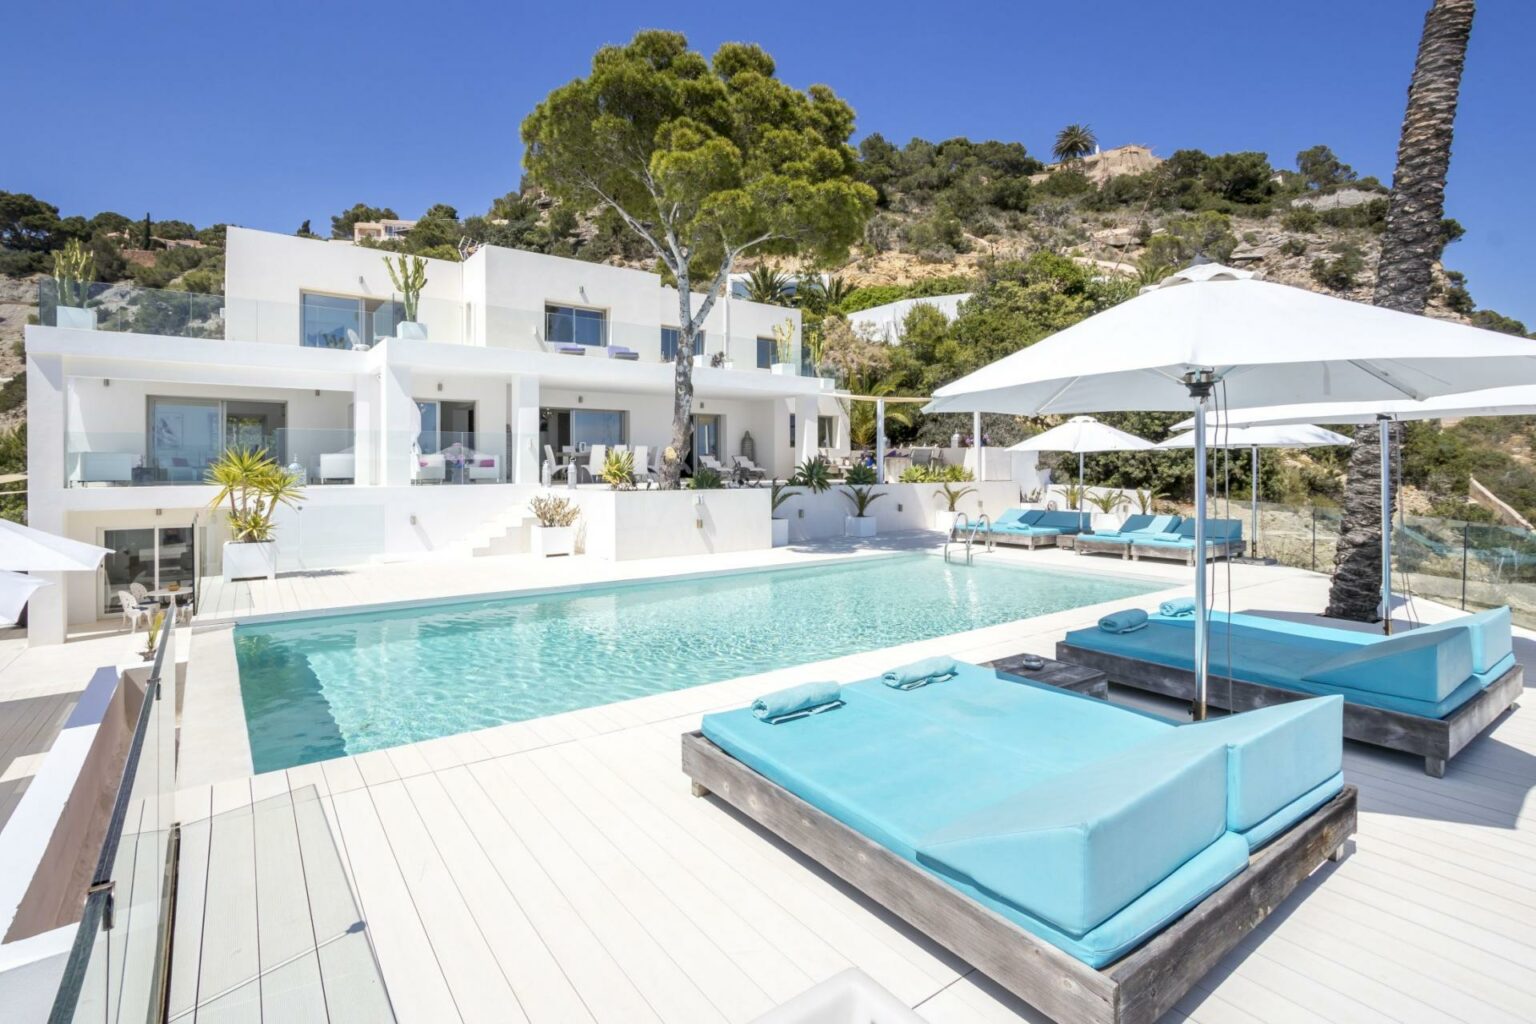 Villa Pearl in Ibiza, exterior view